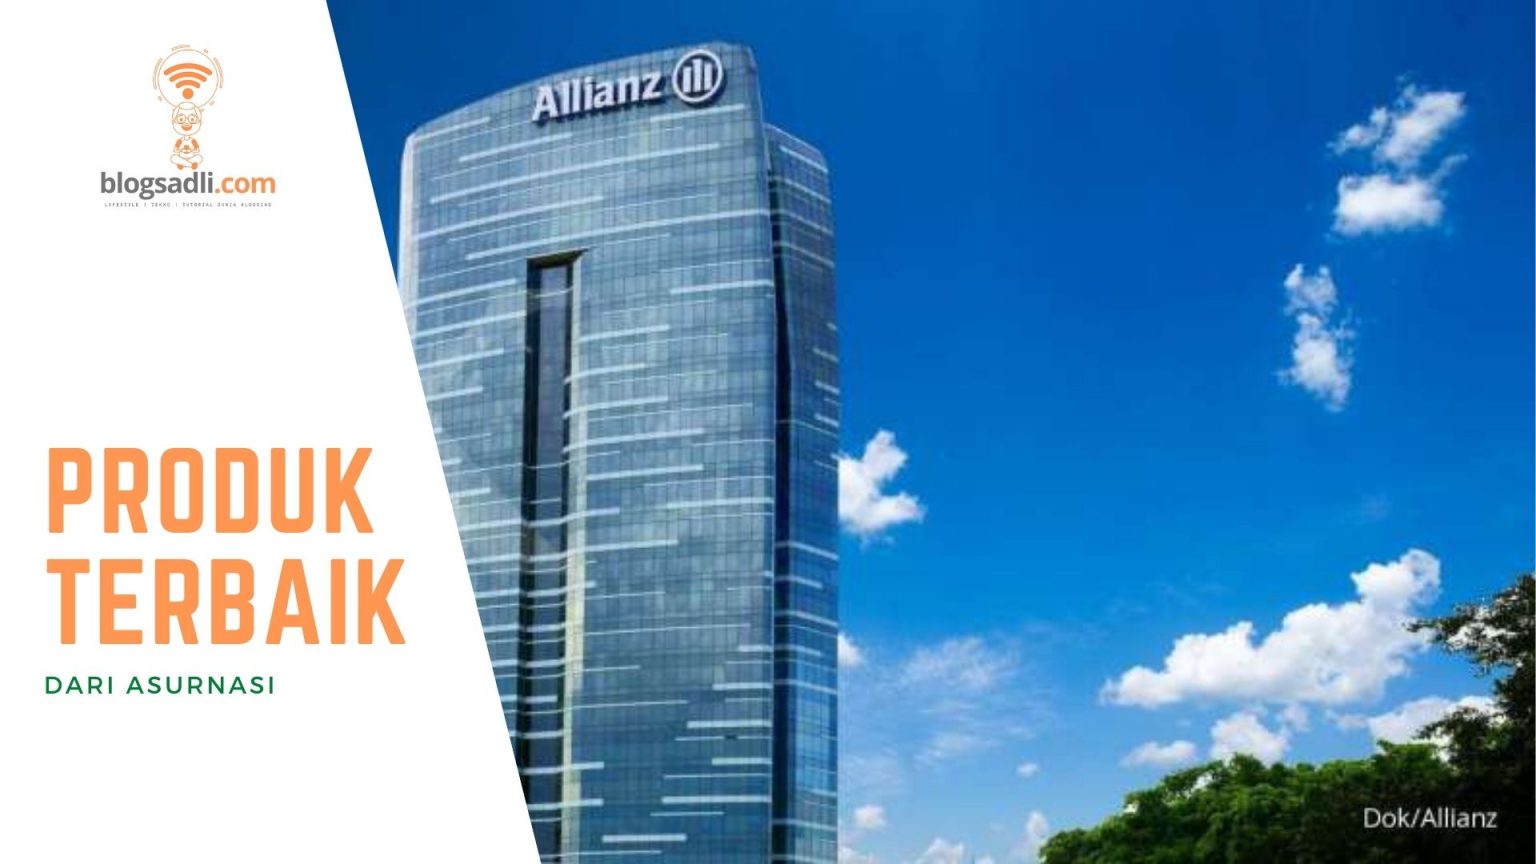 Mengulas Lengkap Berbagai Produk Terbaik Dari Asuransi Allianz